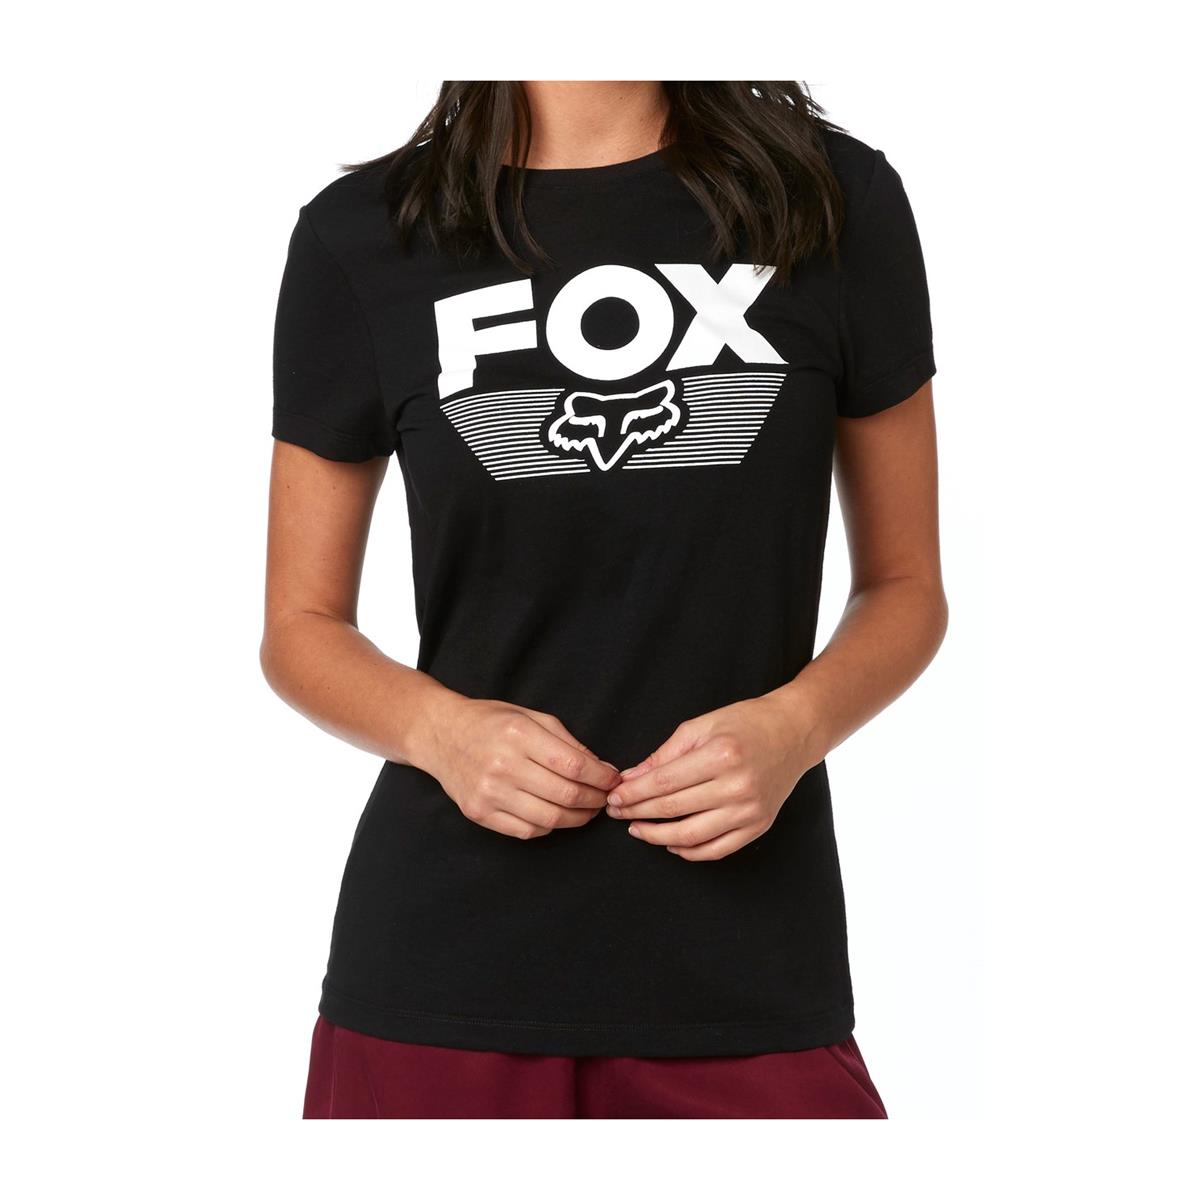 Fox Femme T-Shirt Ascot Black